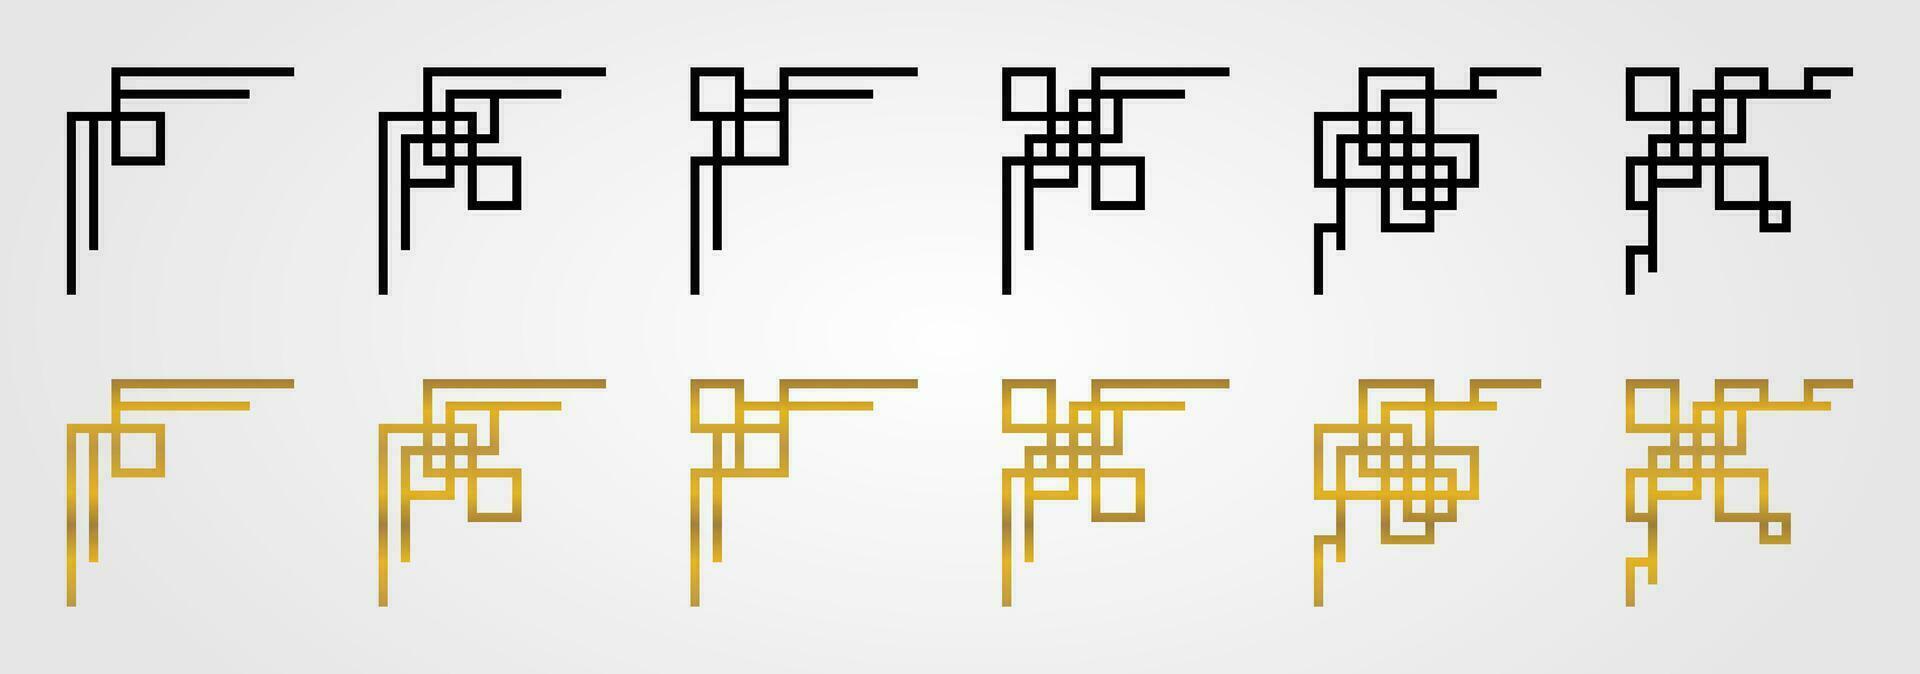 colección de chino nuevo año ornamento frontera esquinas elegante geométrico diseño. decoración para asiático tema marco. vector para póster, folleto, social medios de comunicación, bandera.